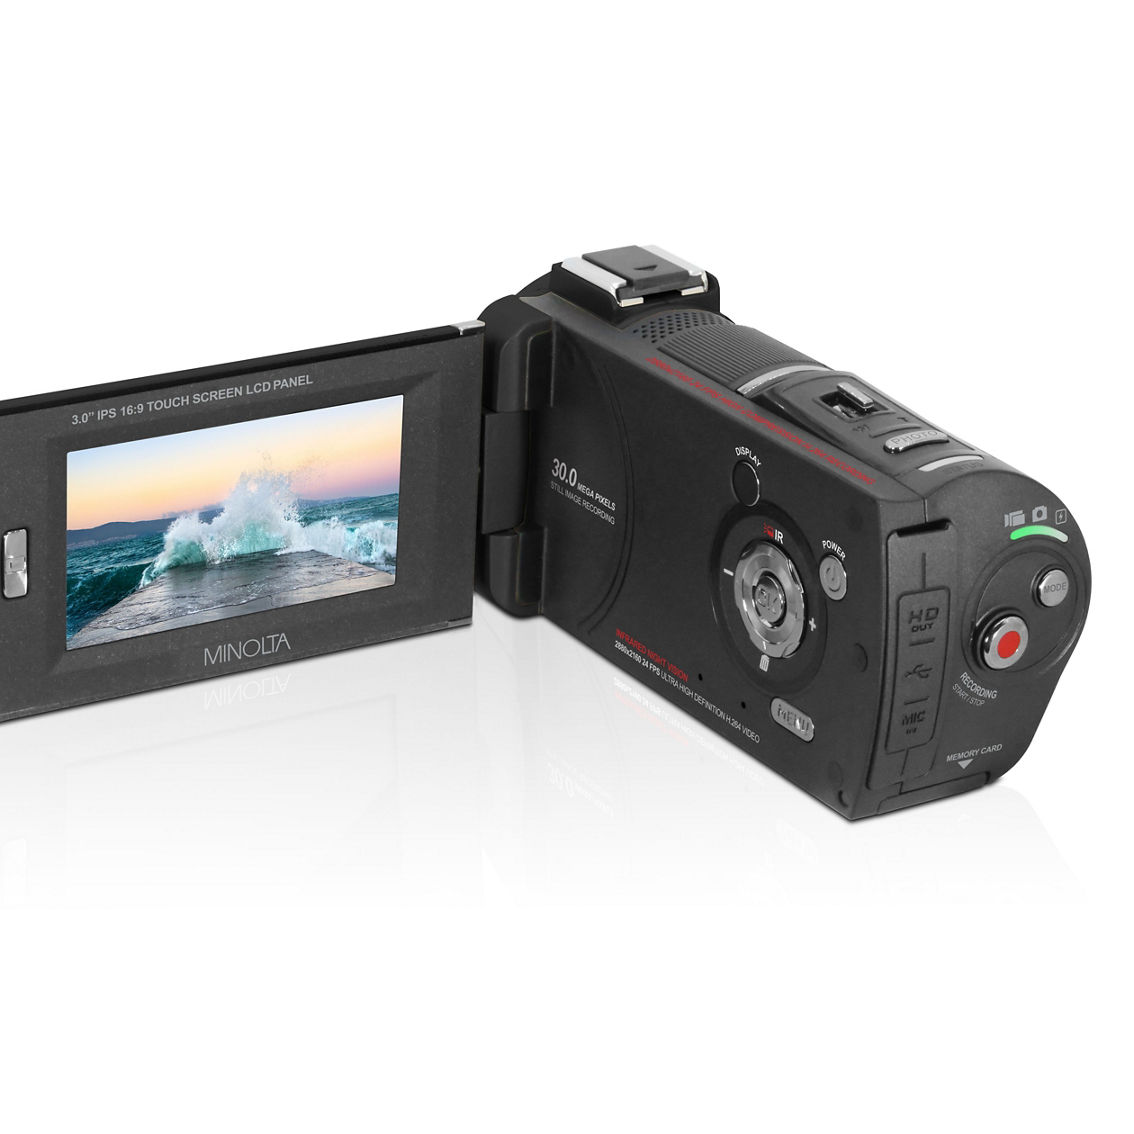 Minolta MN4K30NV 4K Ultra HD / 30MP IR Night Vision Camcorder - Image 4 of 5